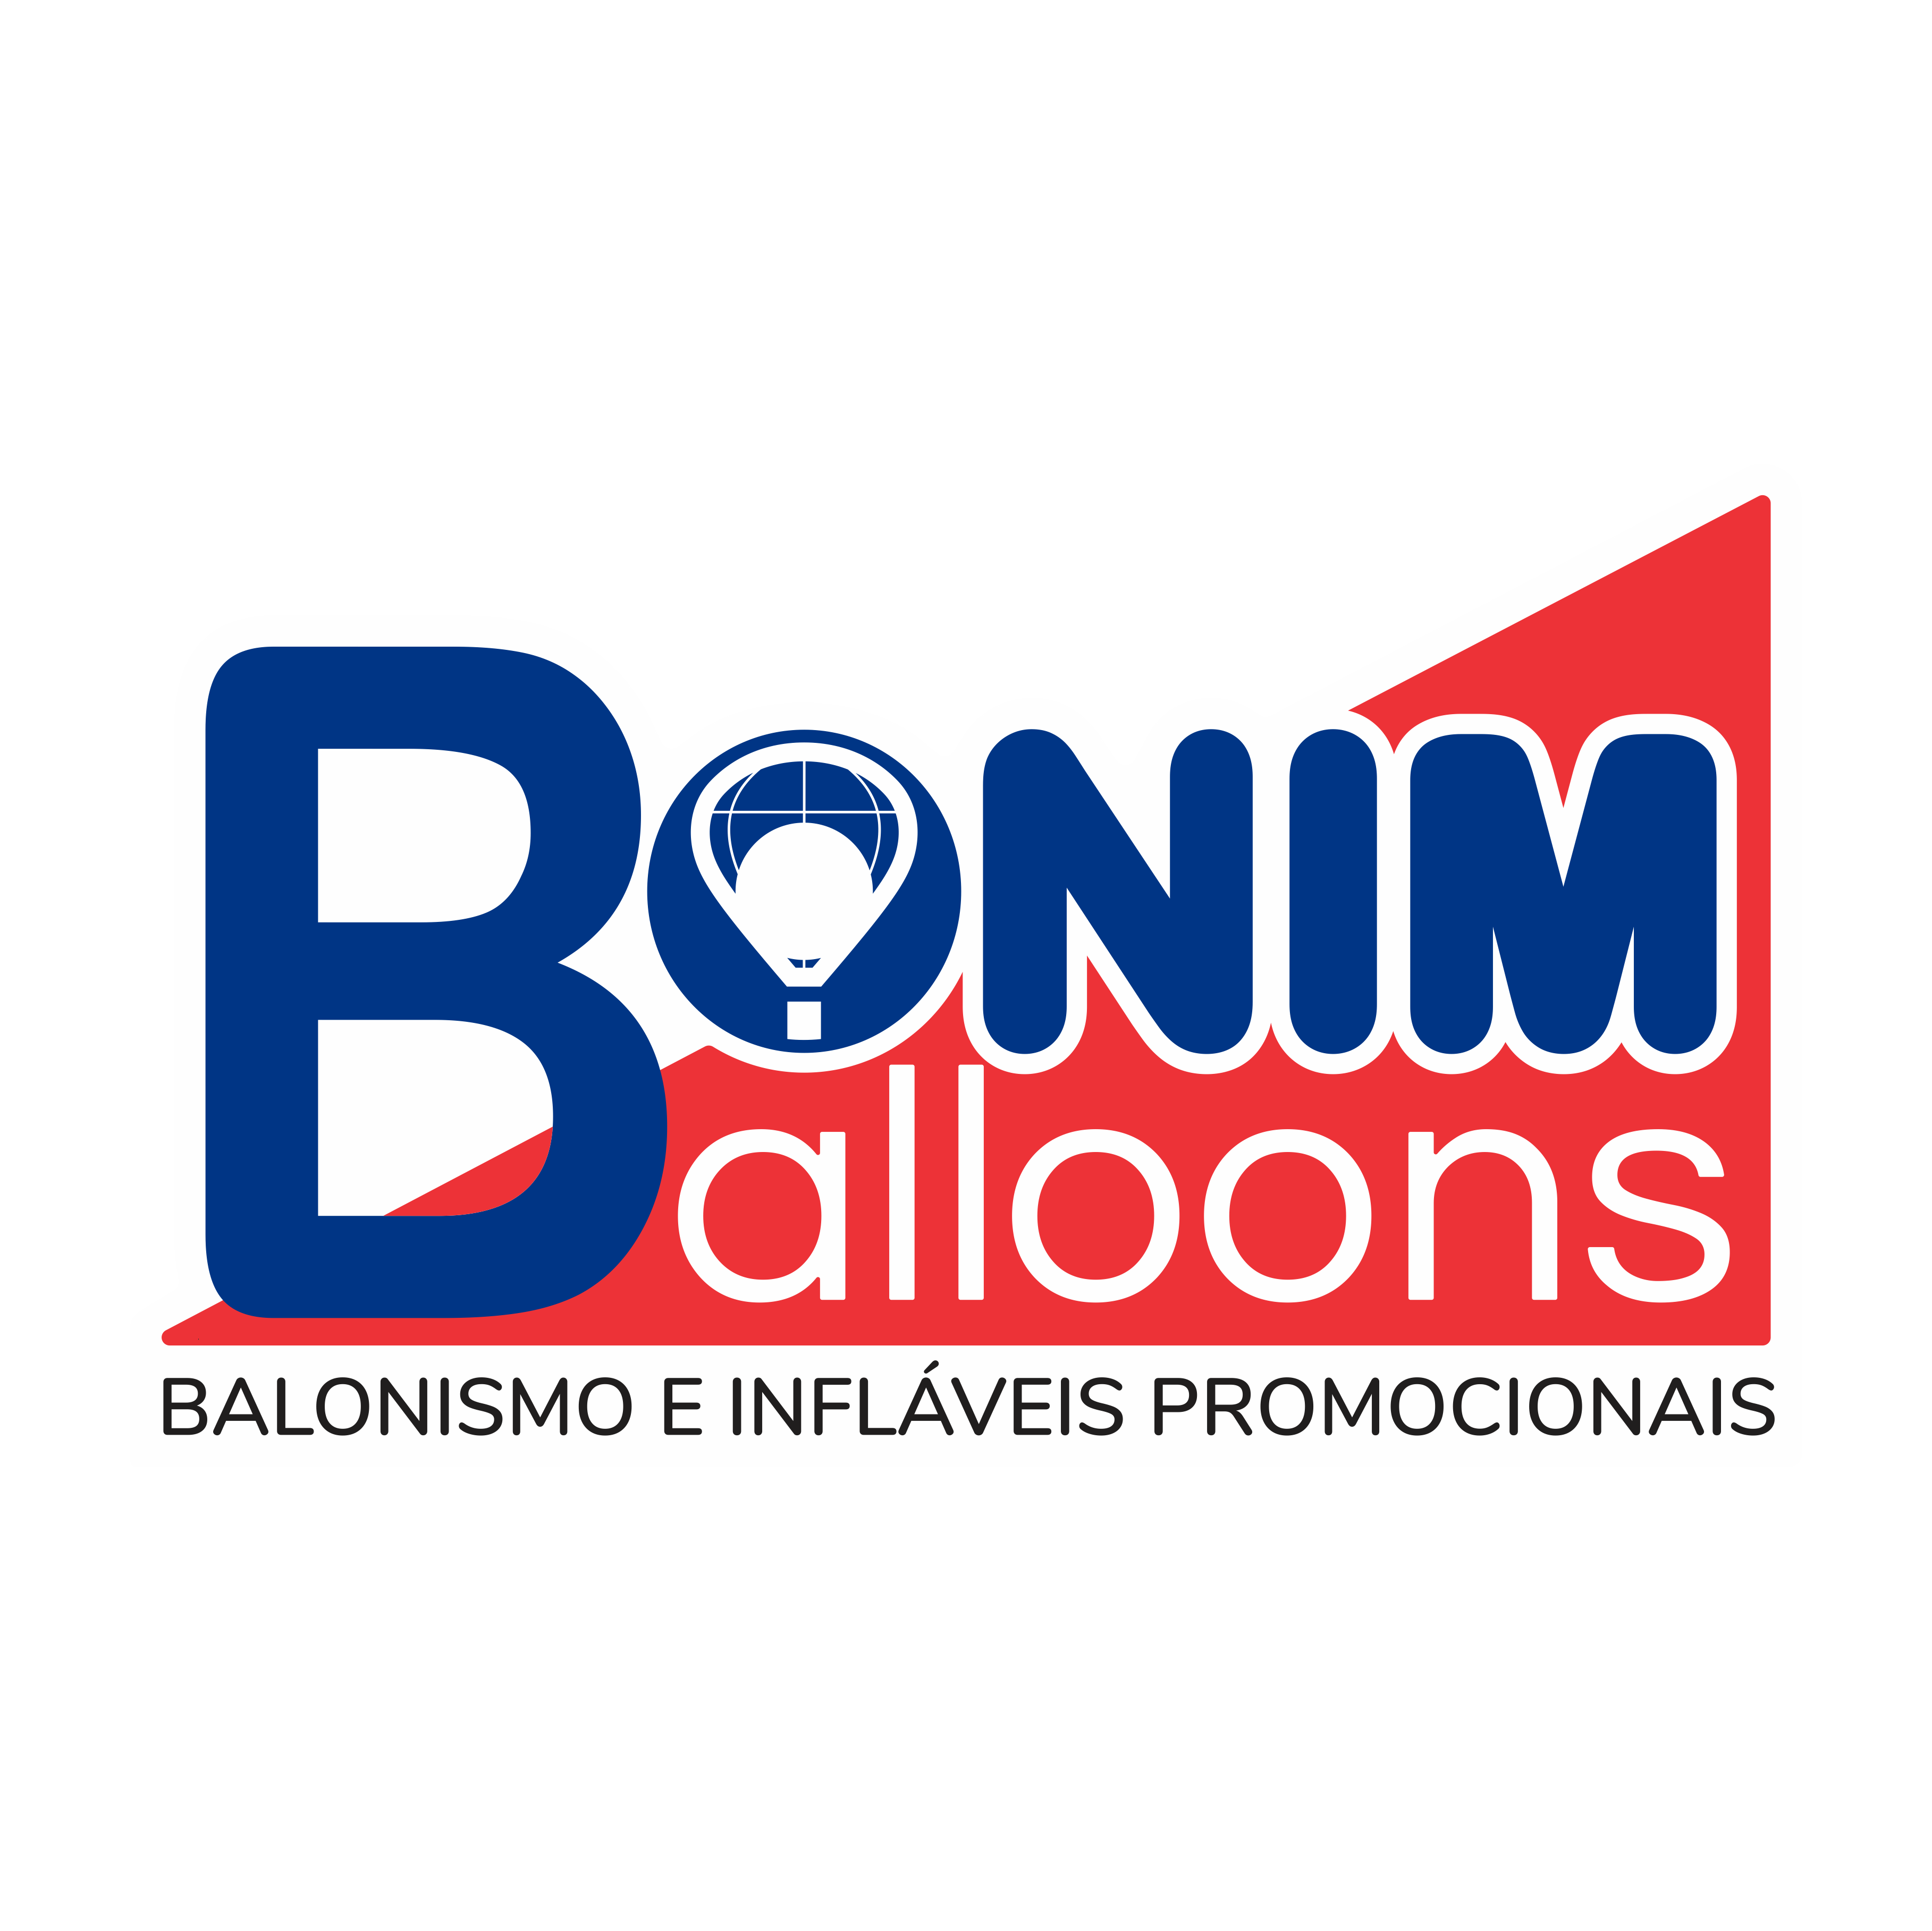 logo_bonim